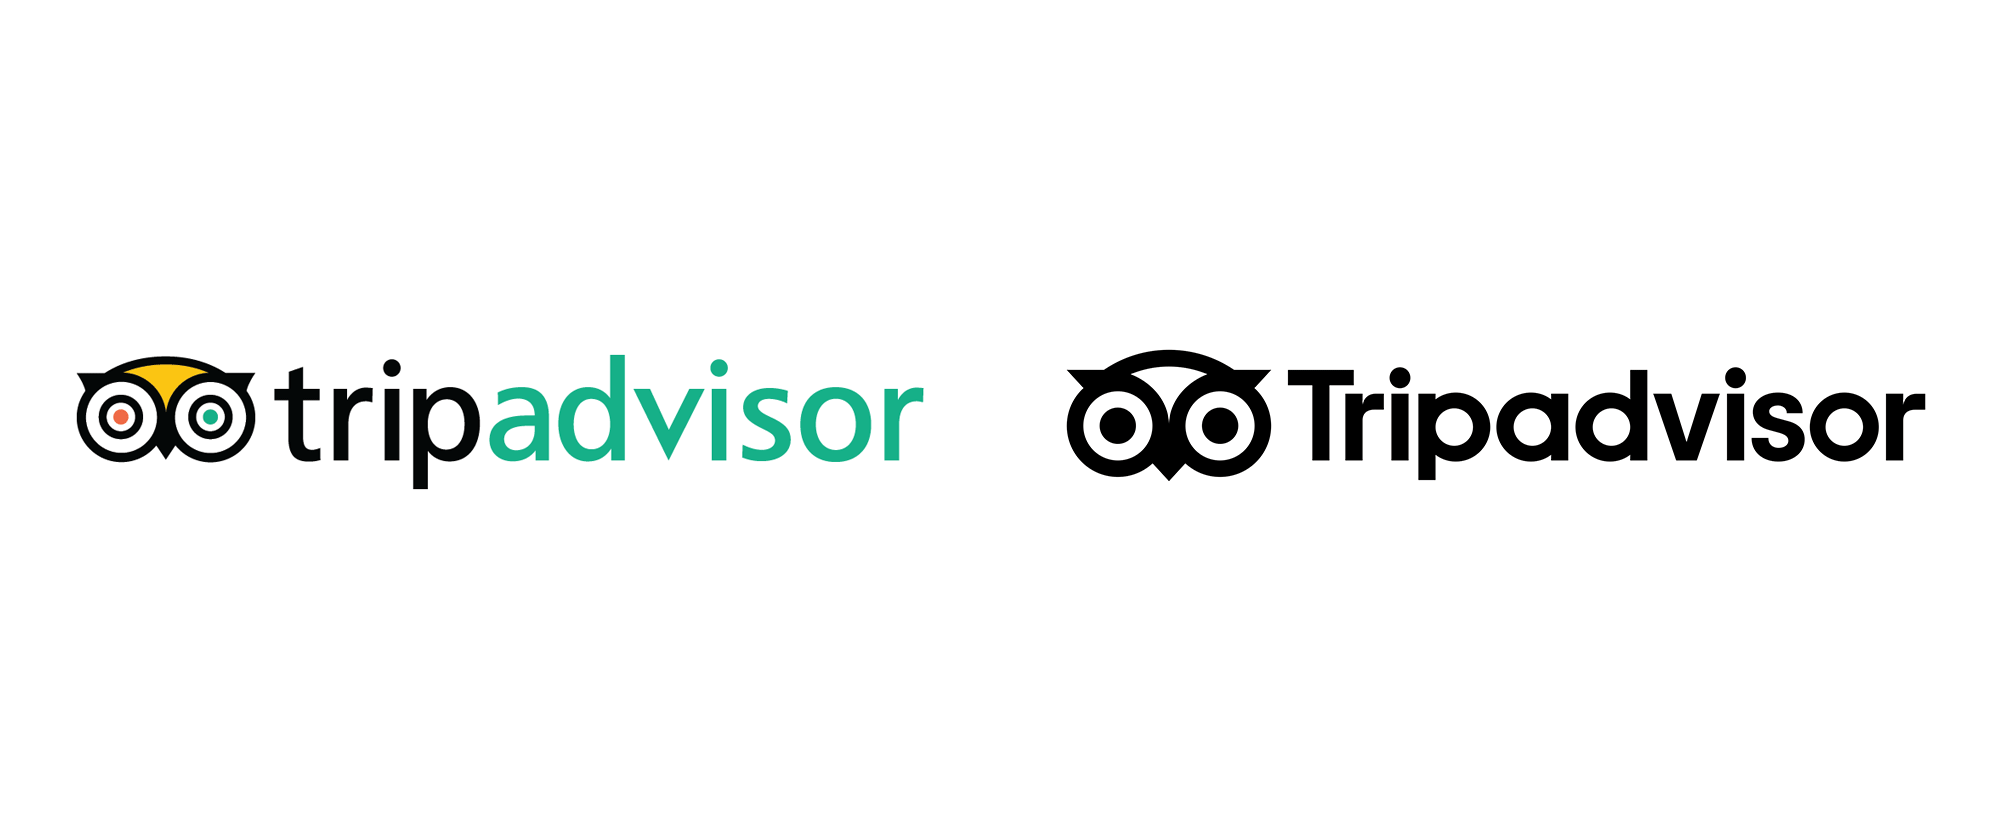 New Logo for Tripadvisor by Mother Design